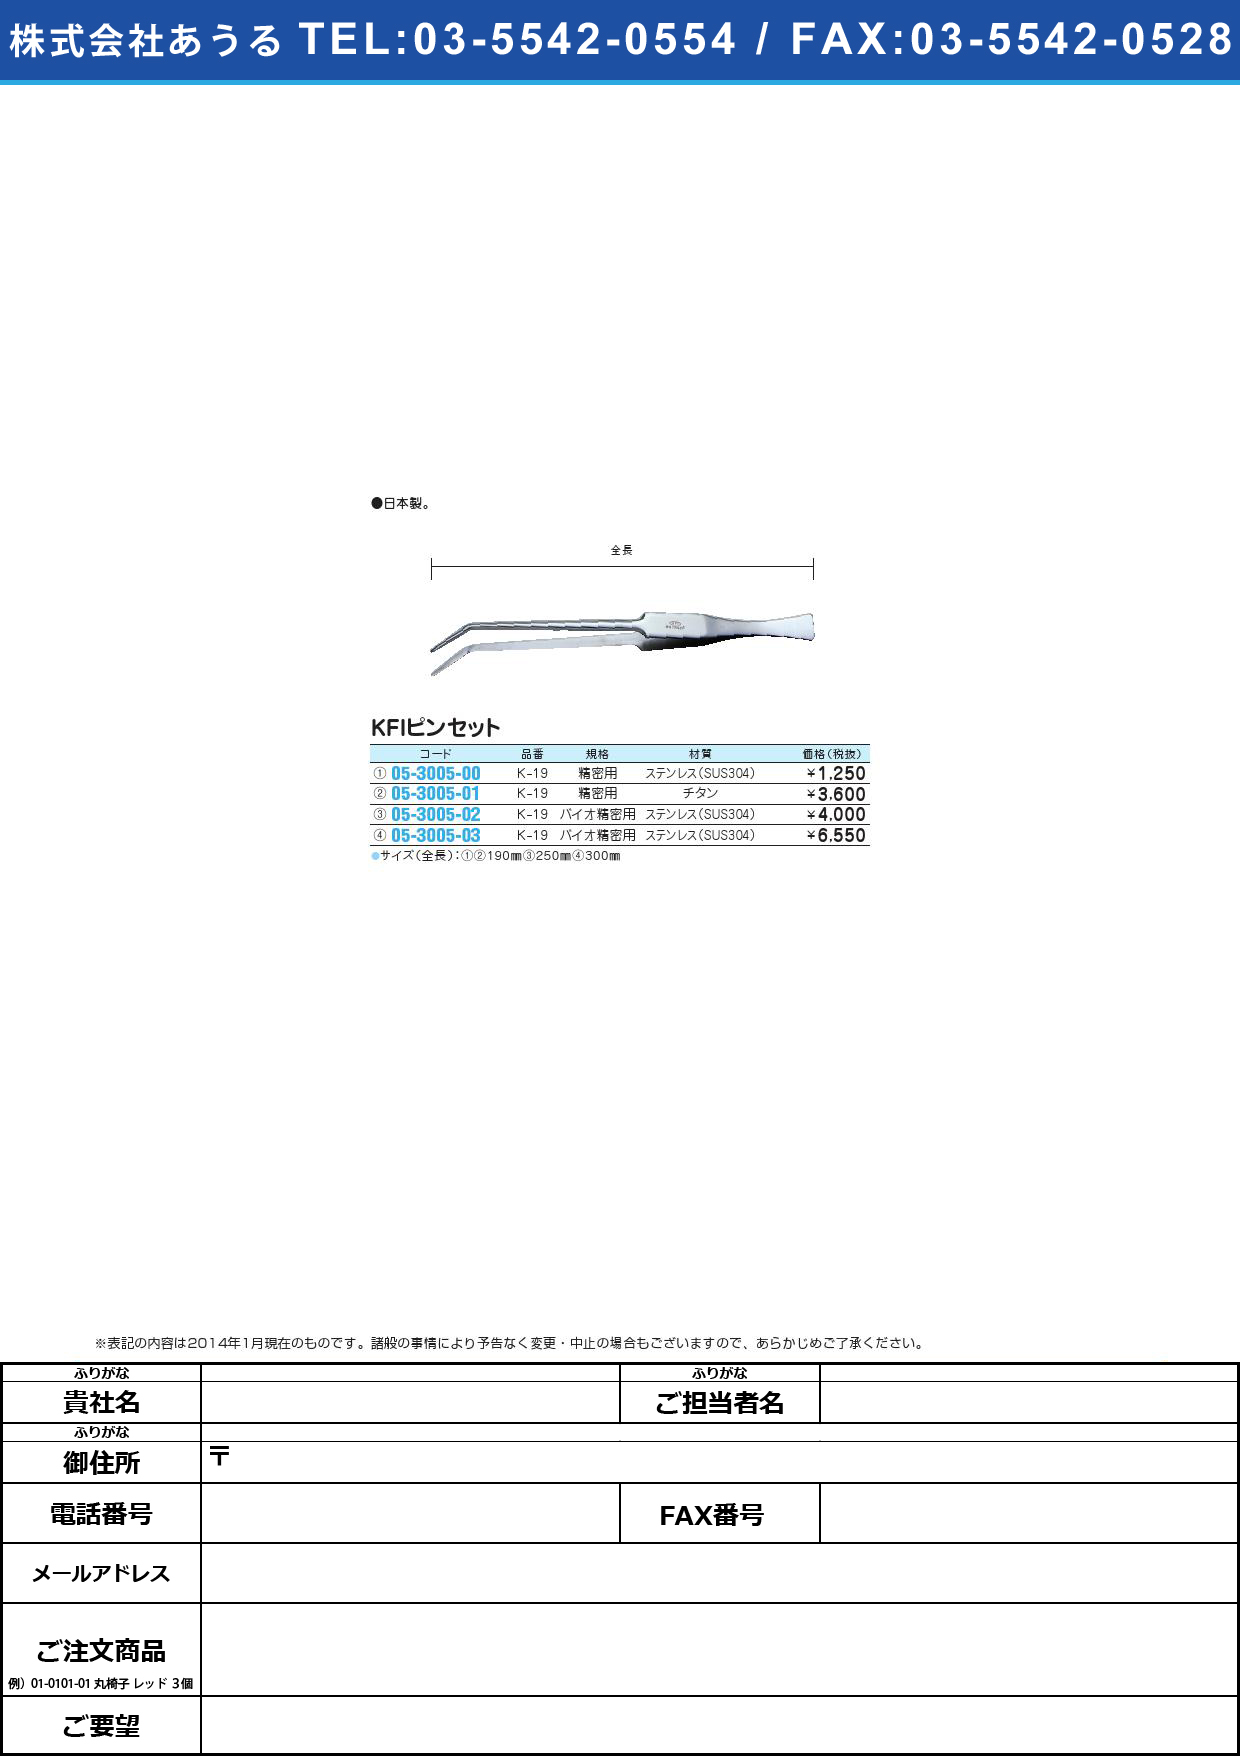 ＫＦＩピンセット バイオ精密用 ﾋﾟﾝｾｯﾄ(05-3005-03)K-19 (ｽﾃﾝﾚｽ) 300MM